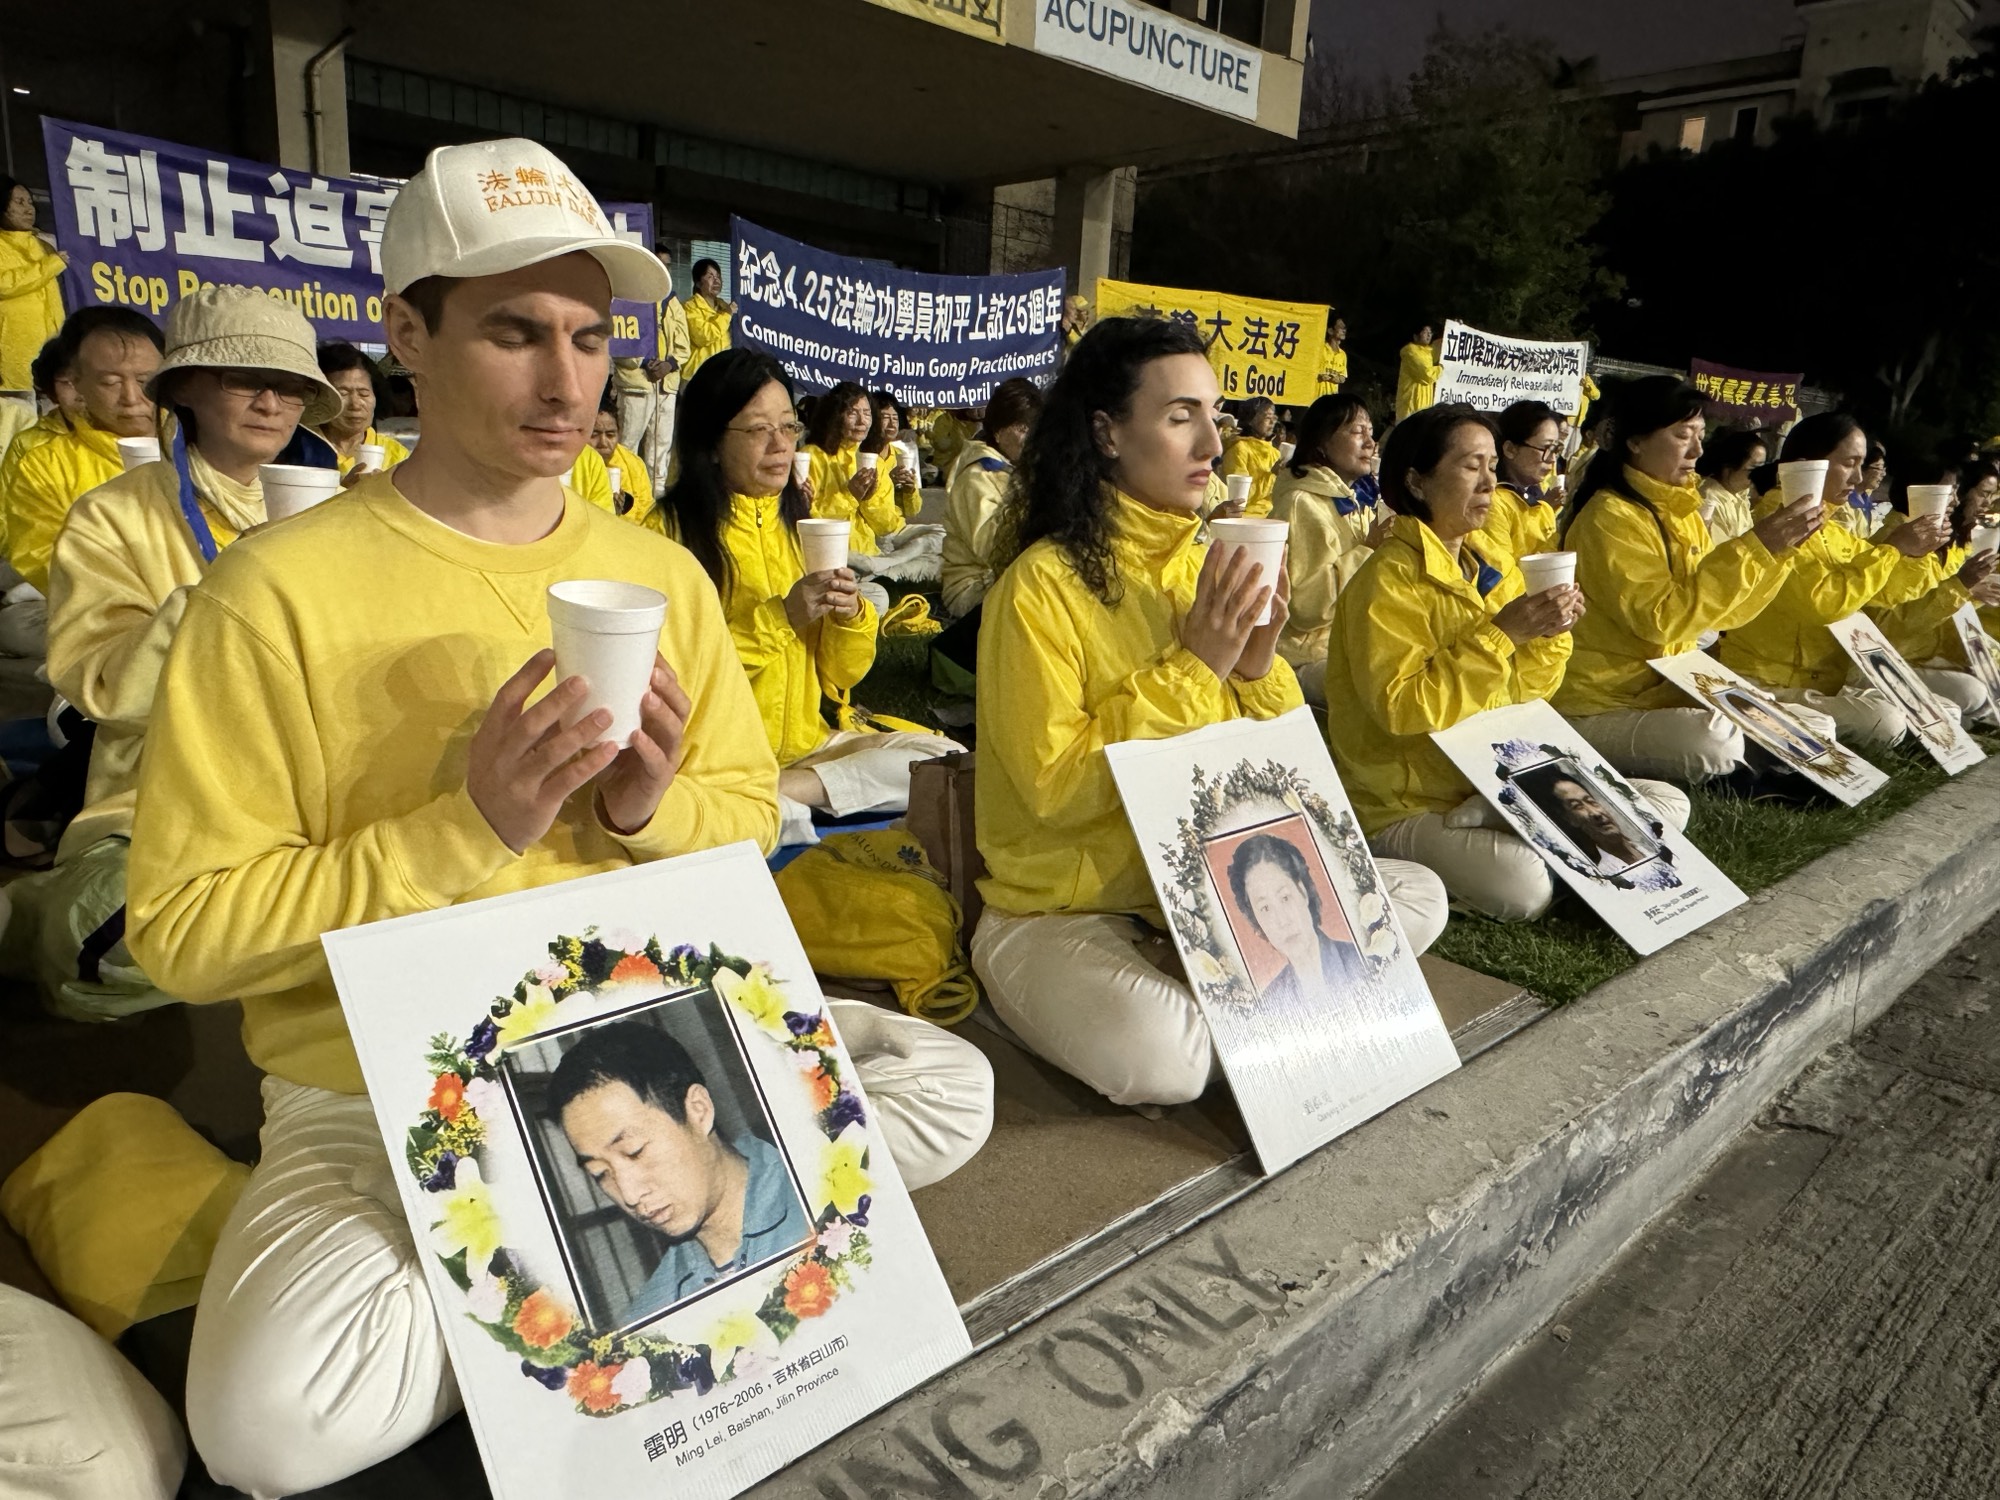 Các học viên Pháp Luân Công ở khu vực Los Angeles đã tập trung trước Lãnh sự quán Trung Quốc ở Los Angeles để kỷ niệm 25 năm cuộc thỉnh nguyện ôn hòa ngày 25/04/1999 của 10,000 học viên Pháp Luân Công, vào tối ngày 21/04/2024. (Ảnh: Khương Lâm Đạt/Epoch Times)